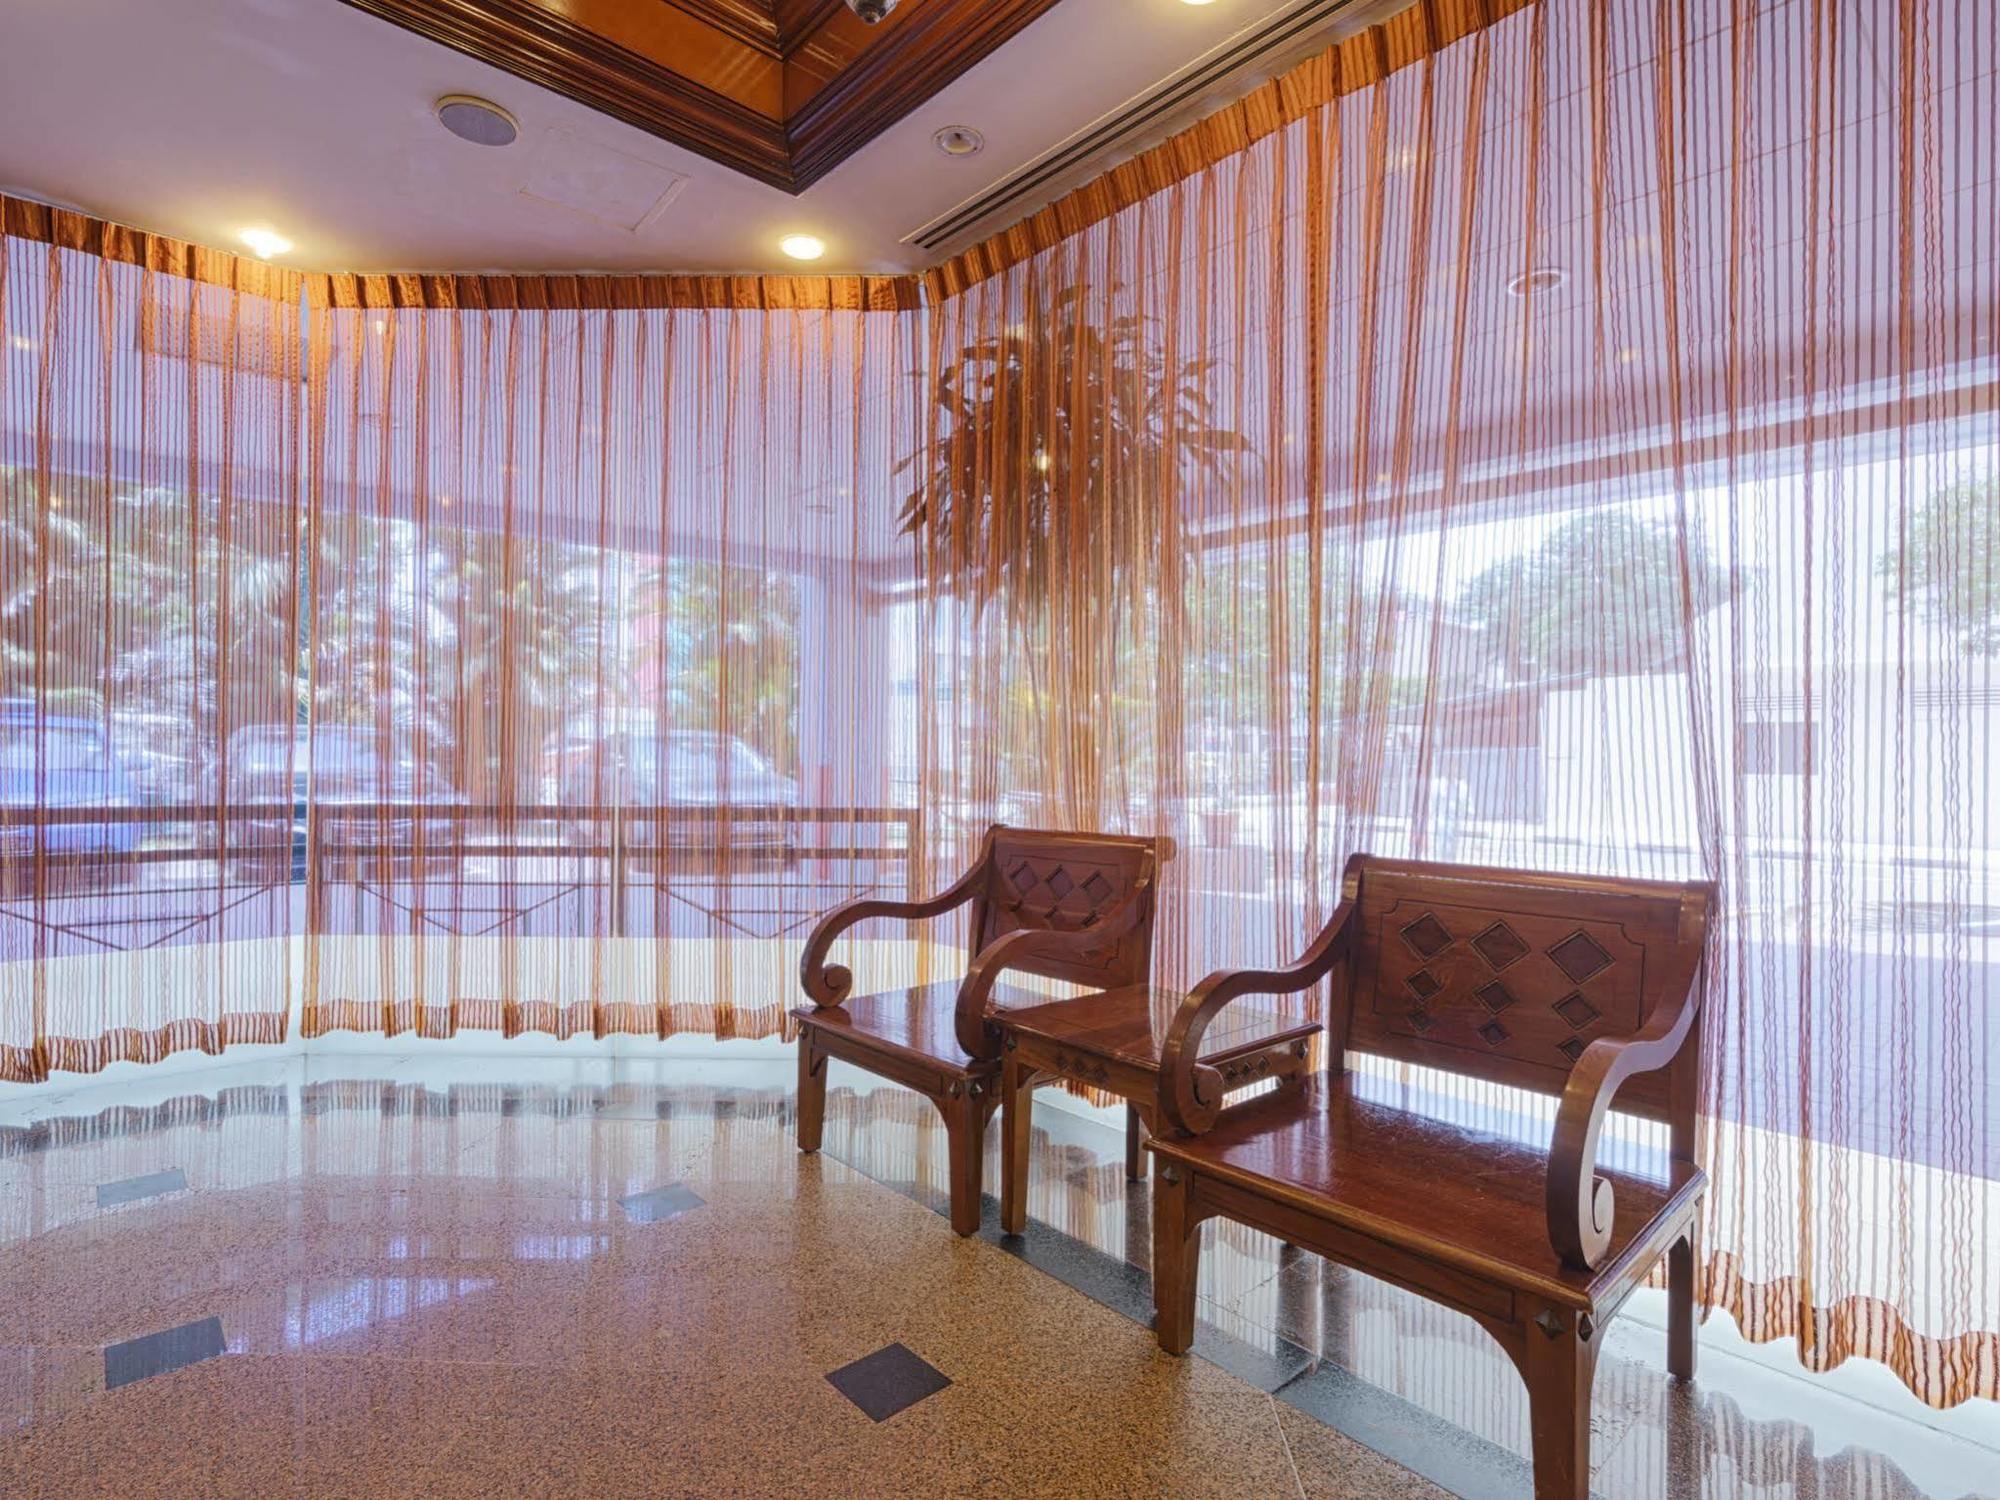 โรงแรม 81 ปริ๊นเซส สิงคโปร์ ภายนอก รูปภาพ